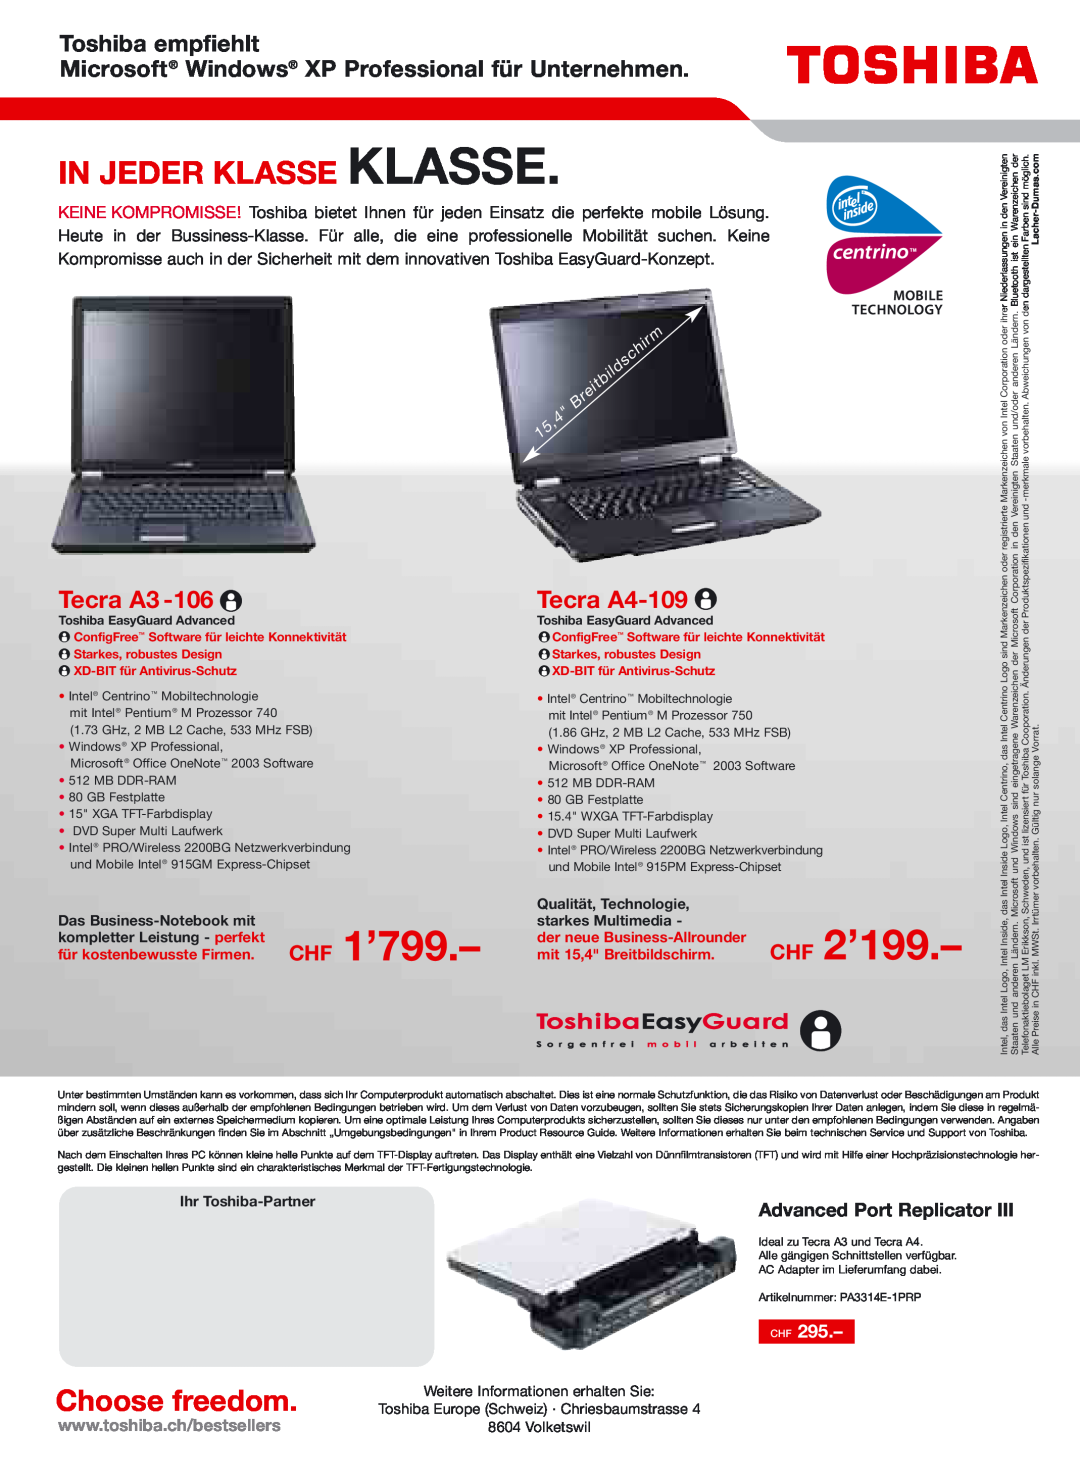 Toshiba Portg R200 CHF 2’199, In Jeder Klasse Klasse, Toshiba empfiehlt Microsoft Windows XP Professional für Unternehmen 